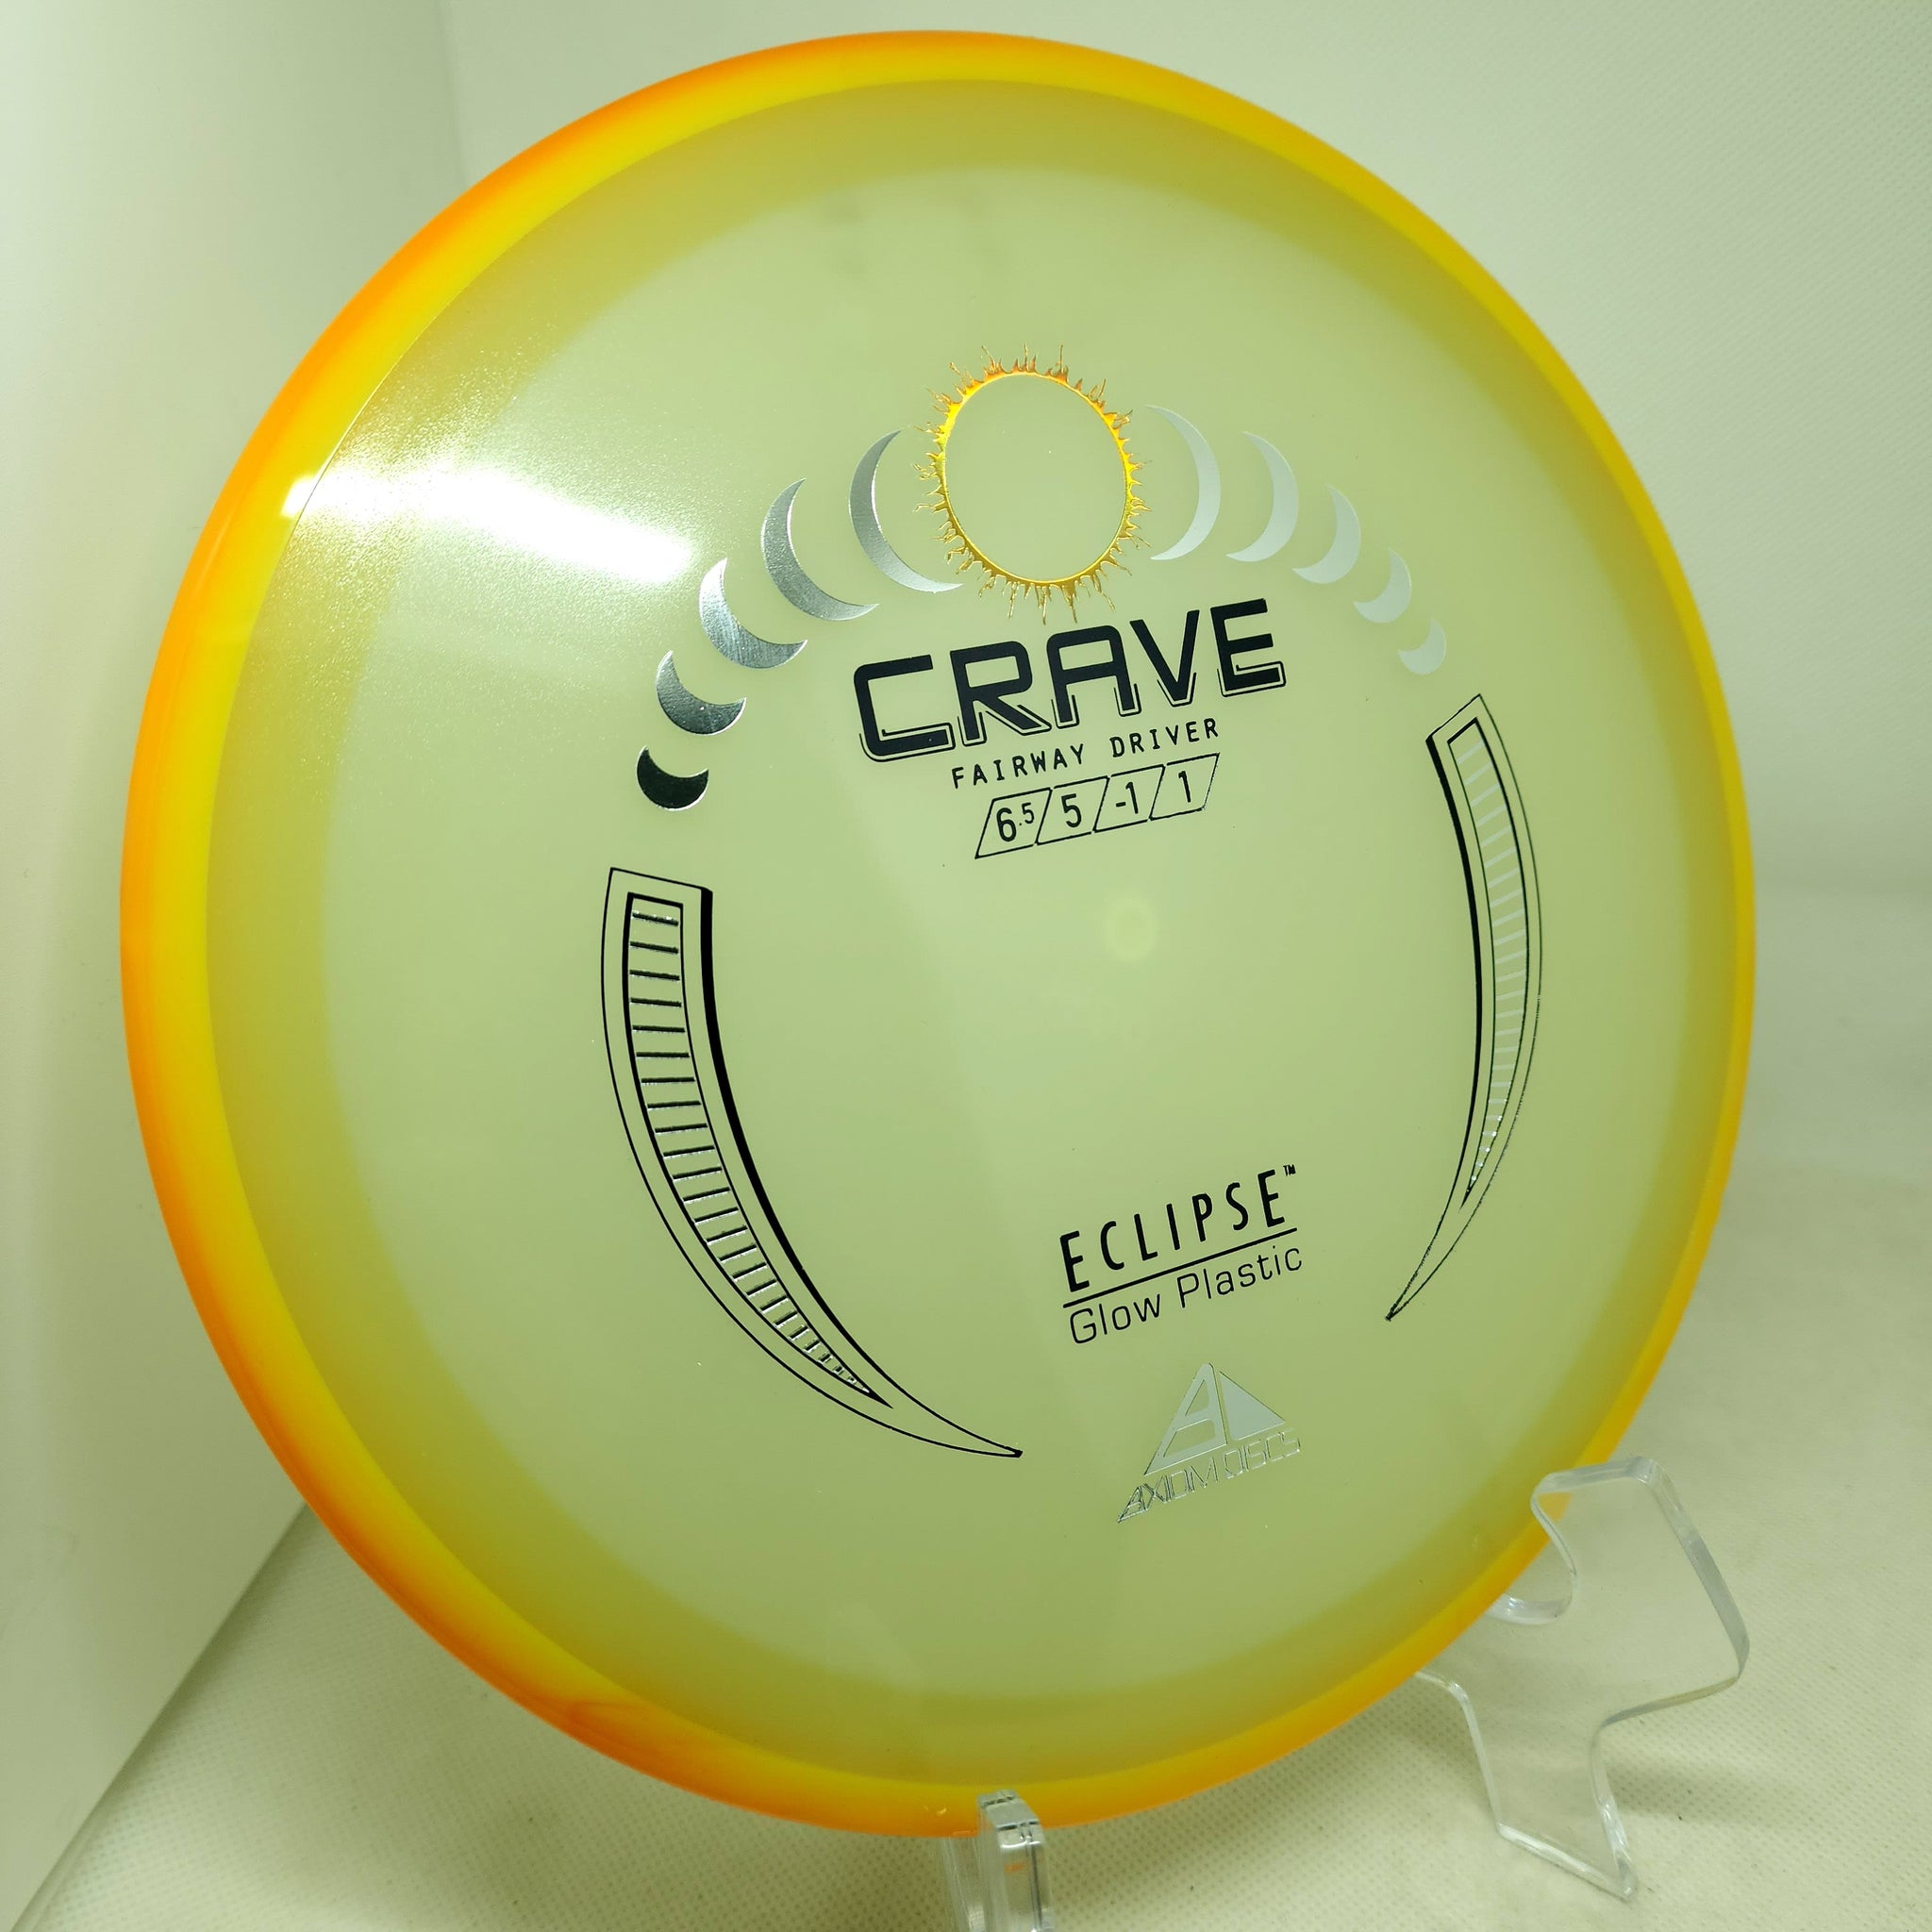 Crave (Eclipse)